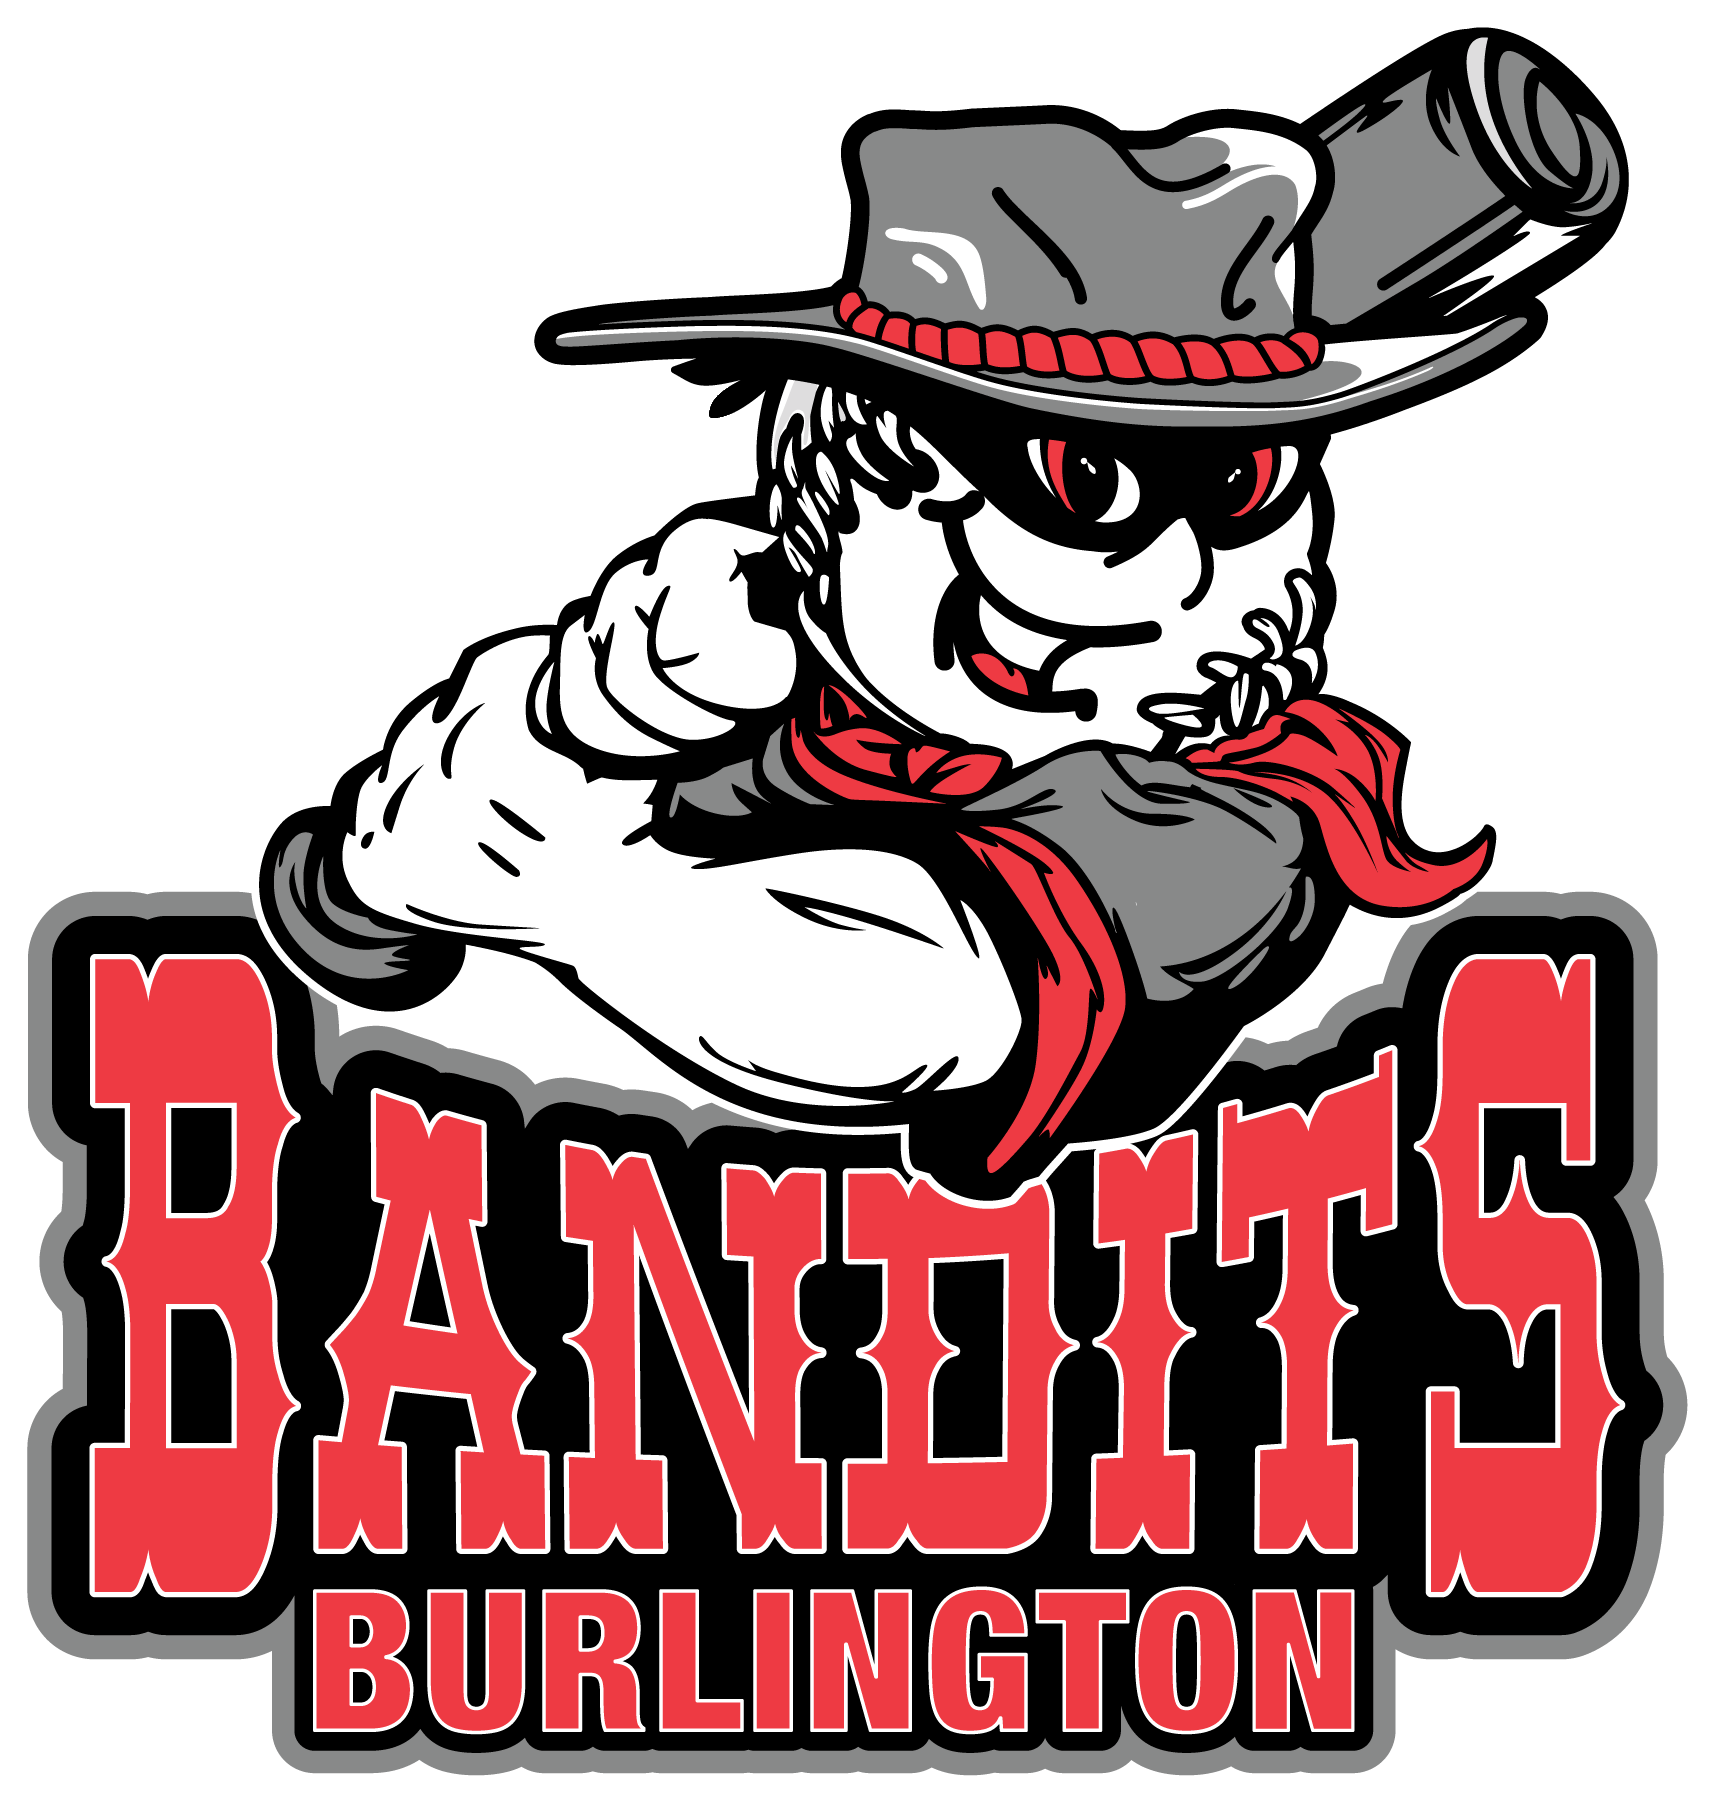 Bandits Logo 1 - Baseball Team Names And Logos (1715x1803)